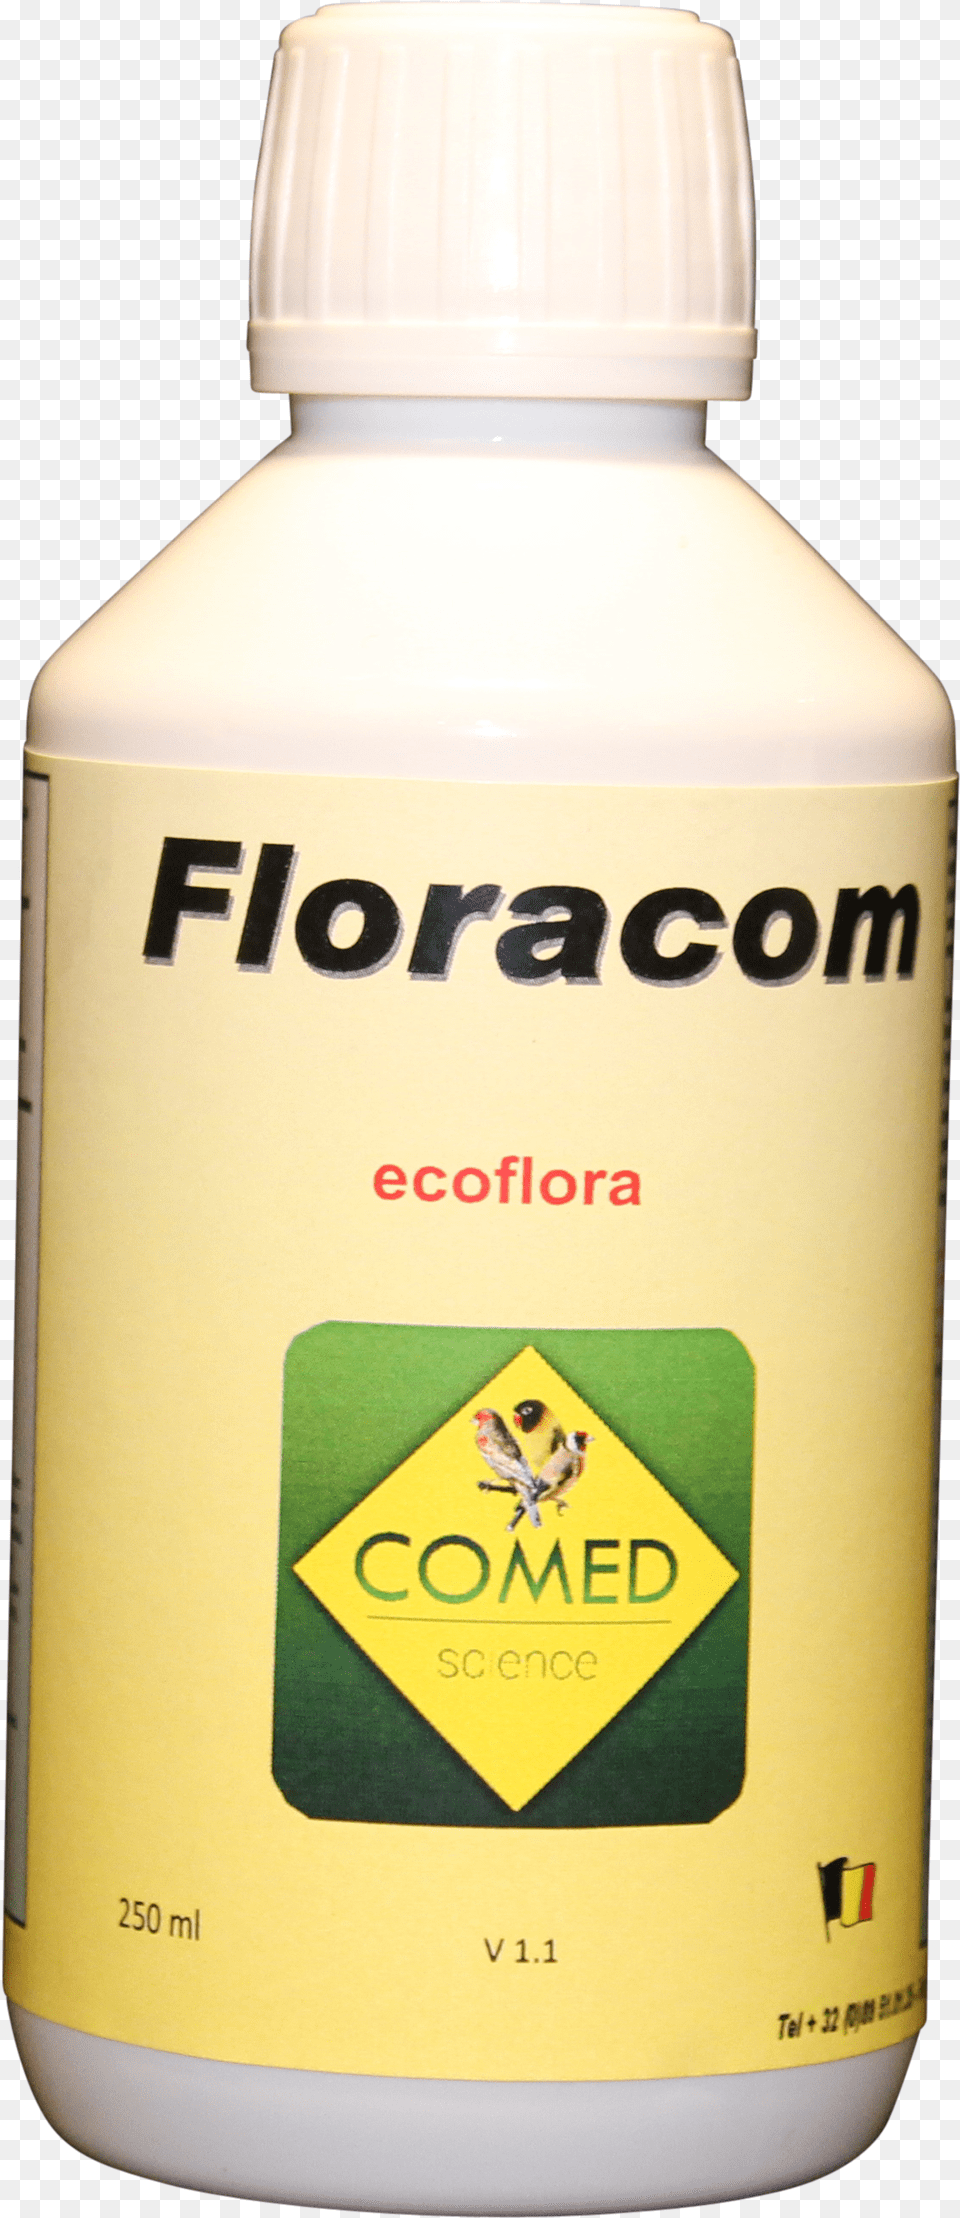 Floracom Bird Plastic Bottle, Alcohol, Beer, Beverage, Animal Free Png Download